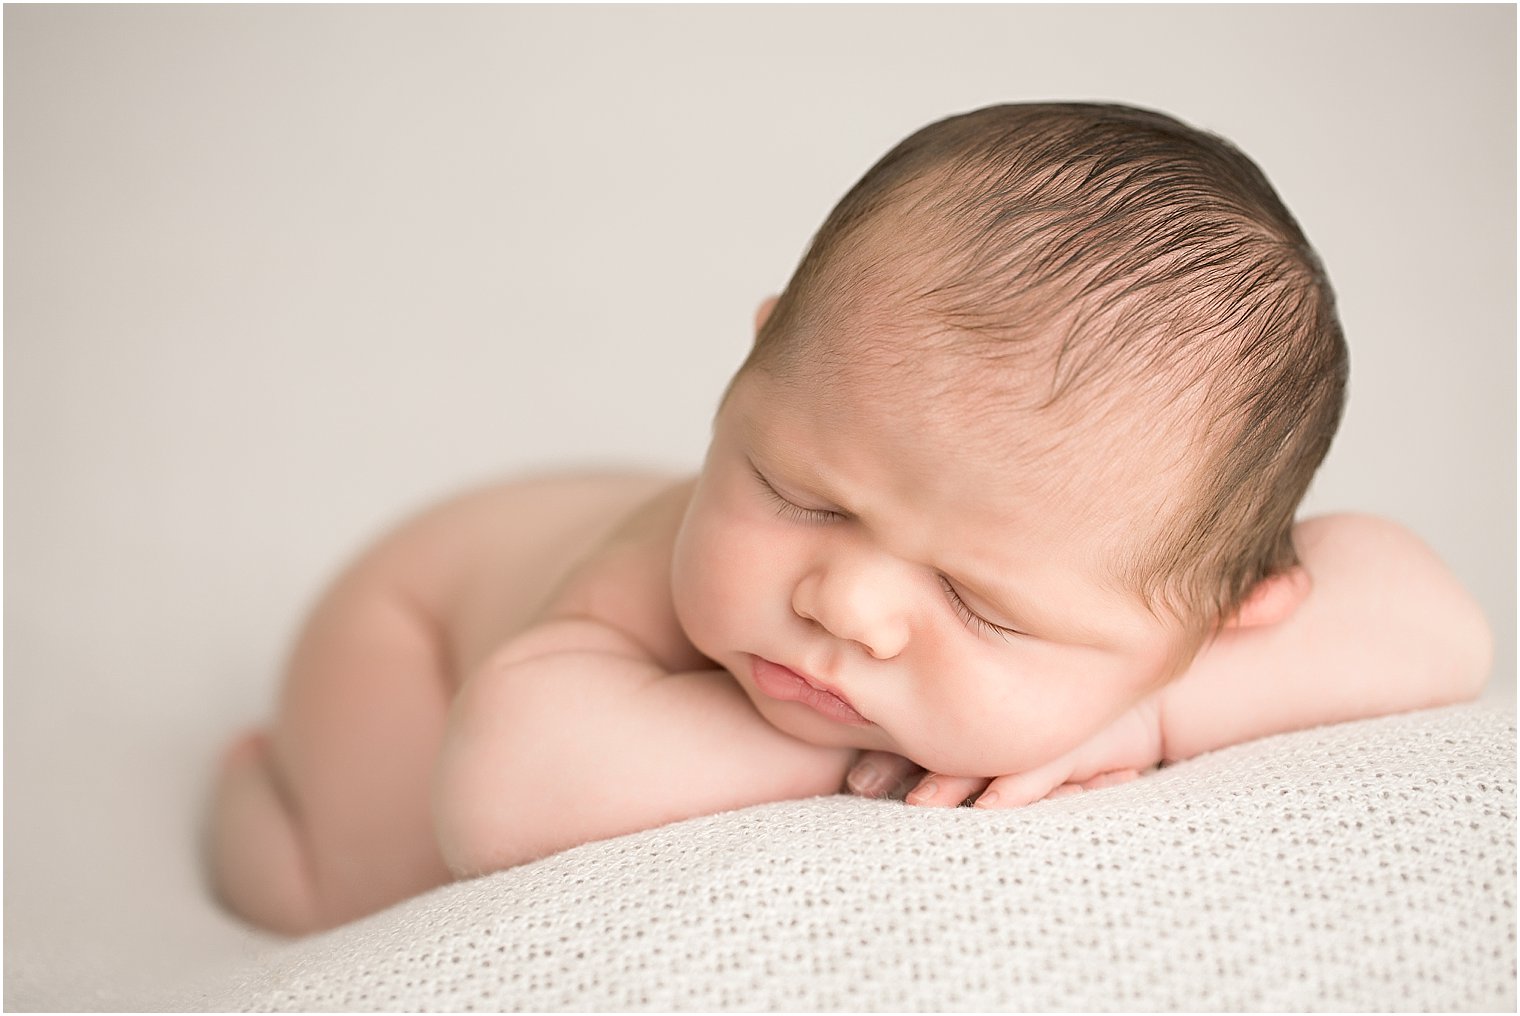 Newborn boy in chin on hands pose